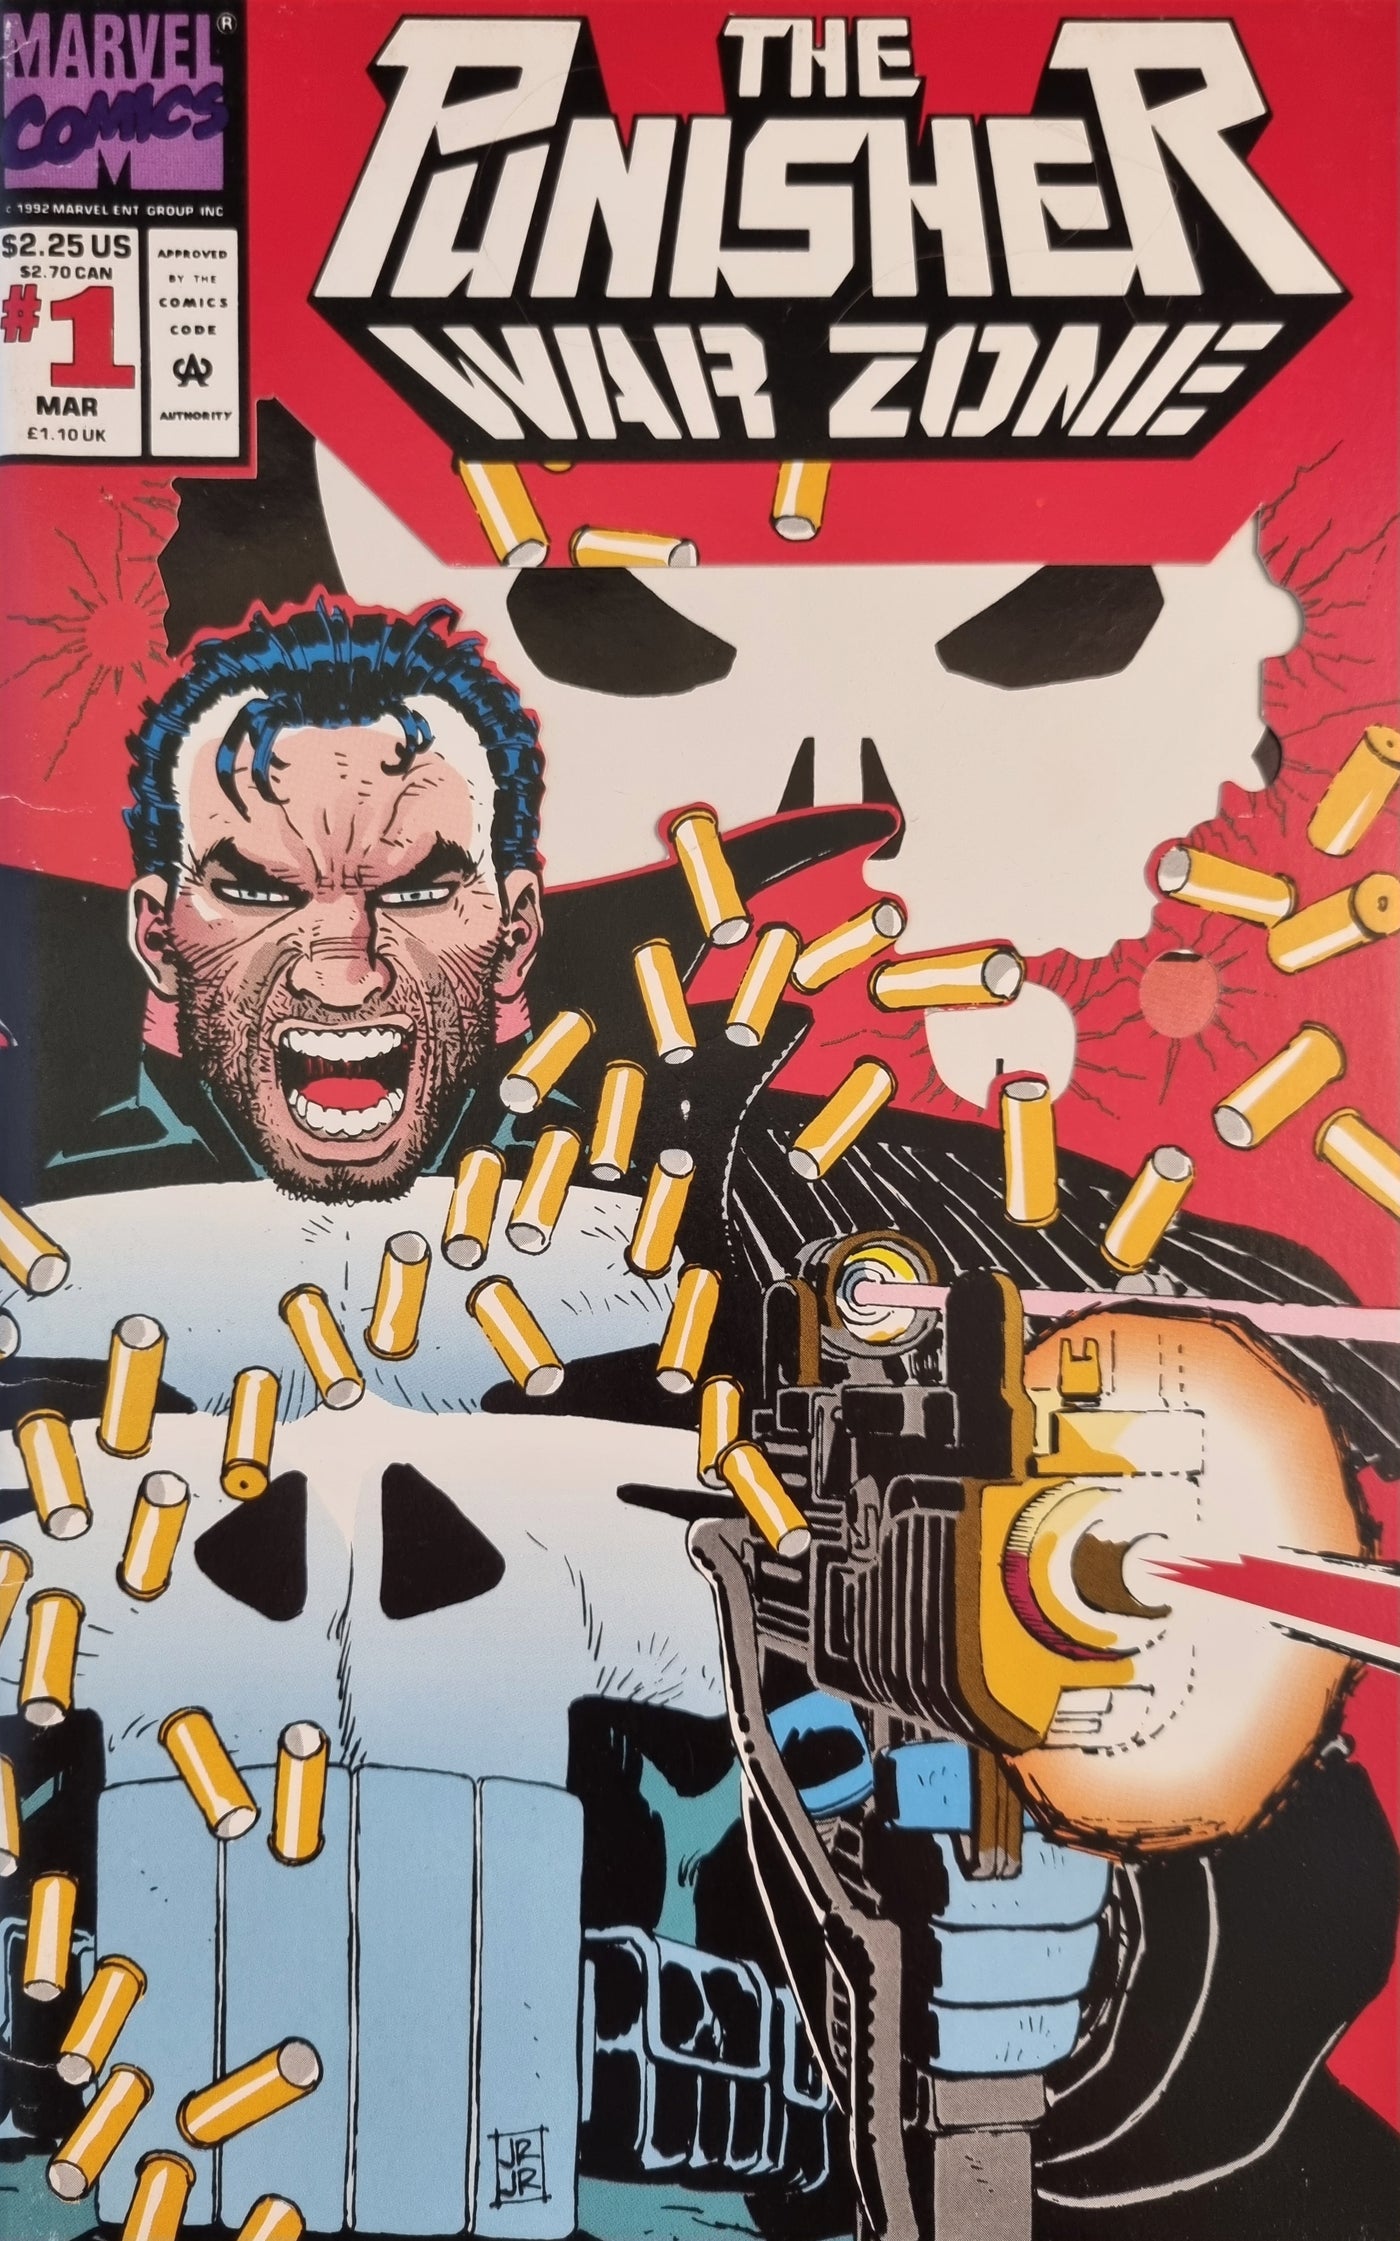 The Punisher: War Zone (Volume 1) #1